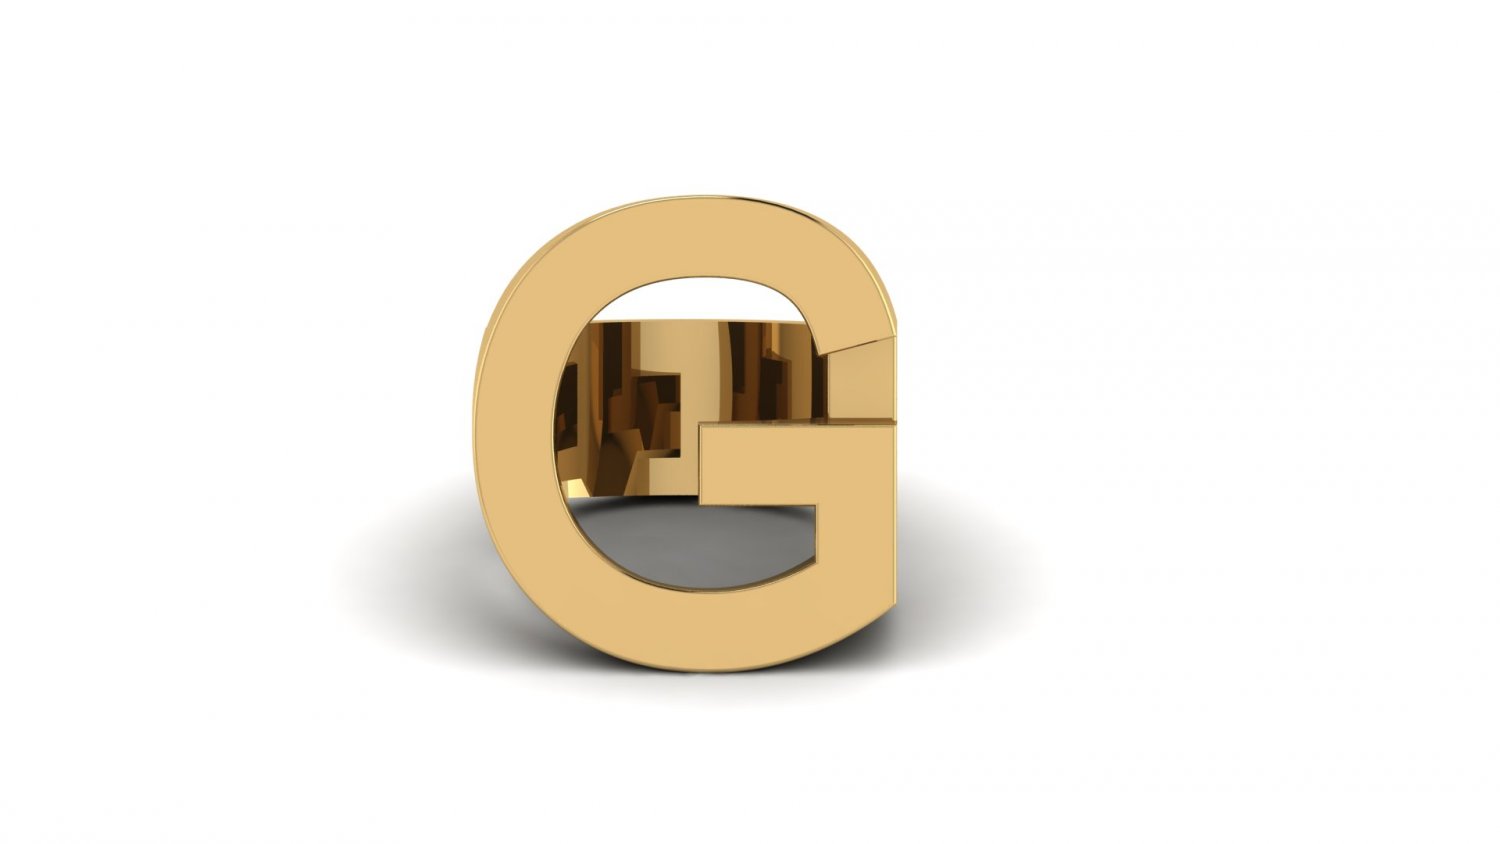 22K Gold 'N - Initial' Ring For Men - 235-GR7332 in 4.500 Grams